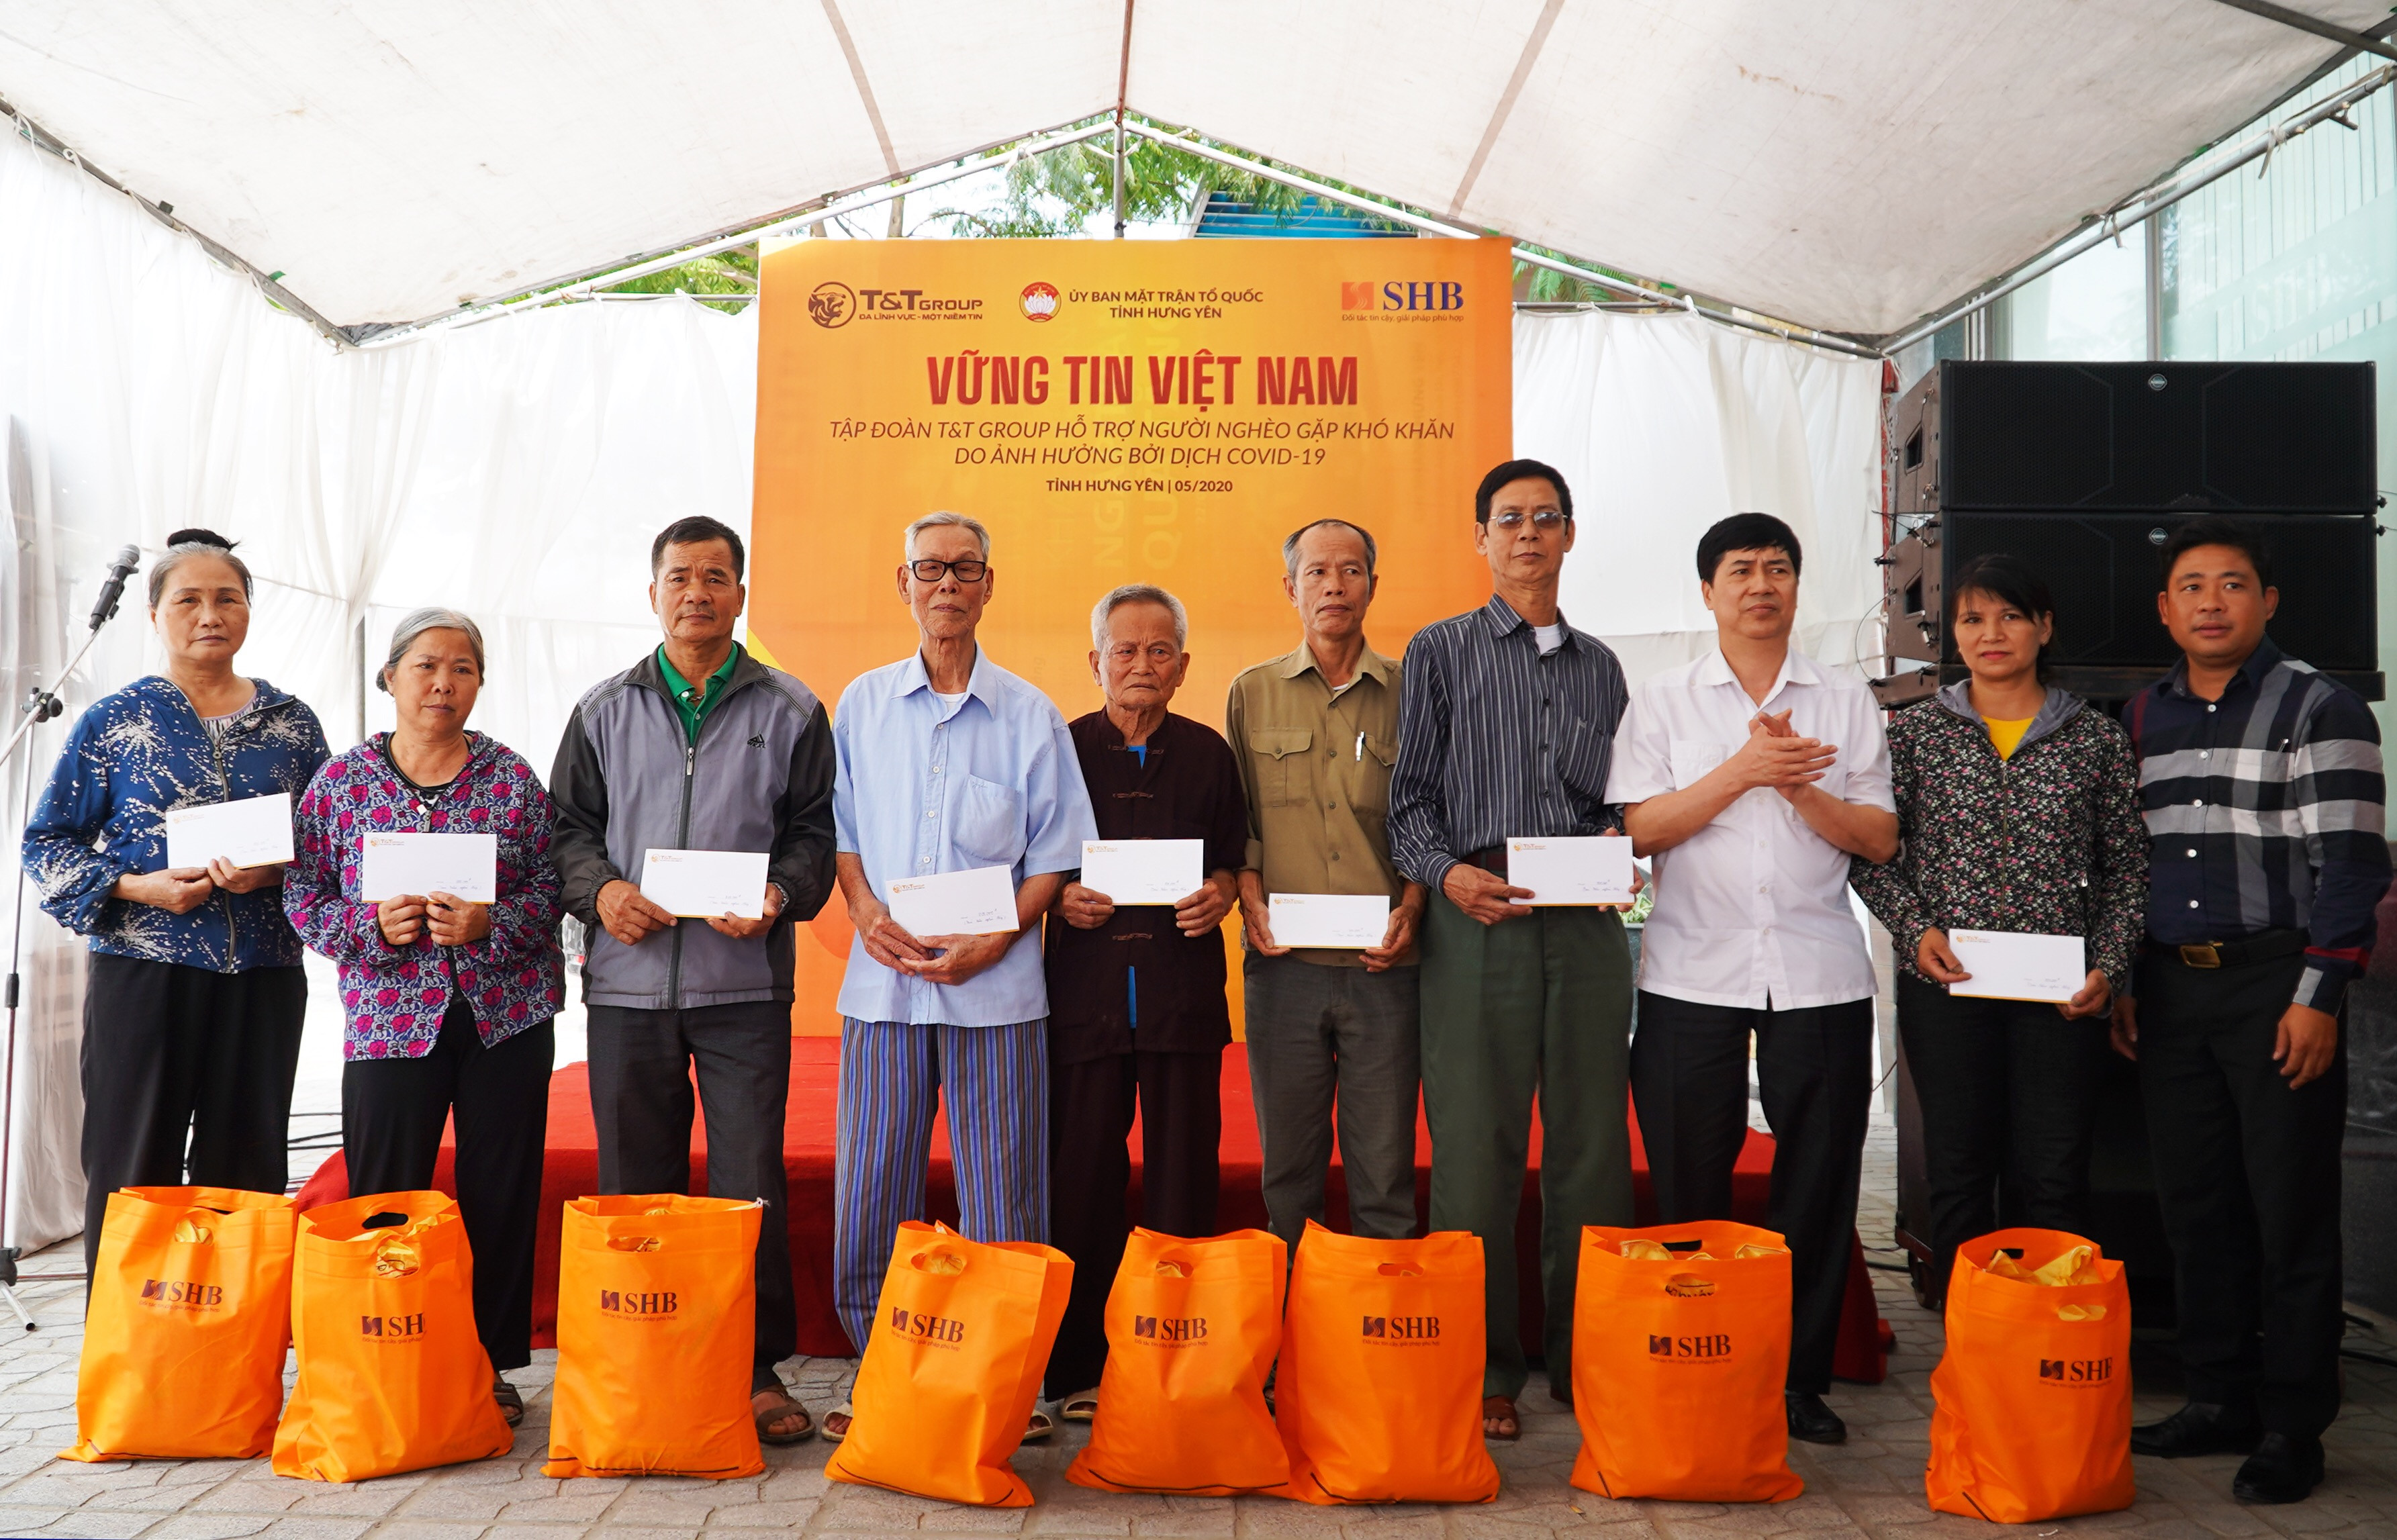 Cha liệt sĩ xúc động khi nhận quà từ chương trình “Vững tin Việt Nam” của Tập đoàn T&T Group